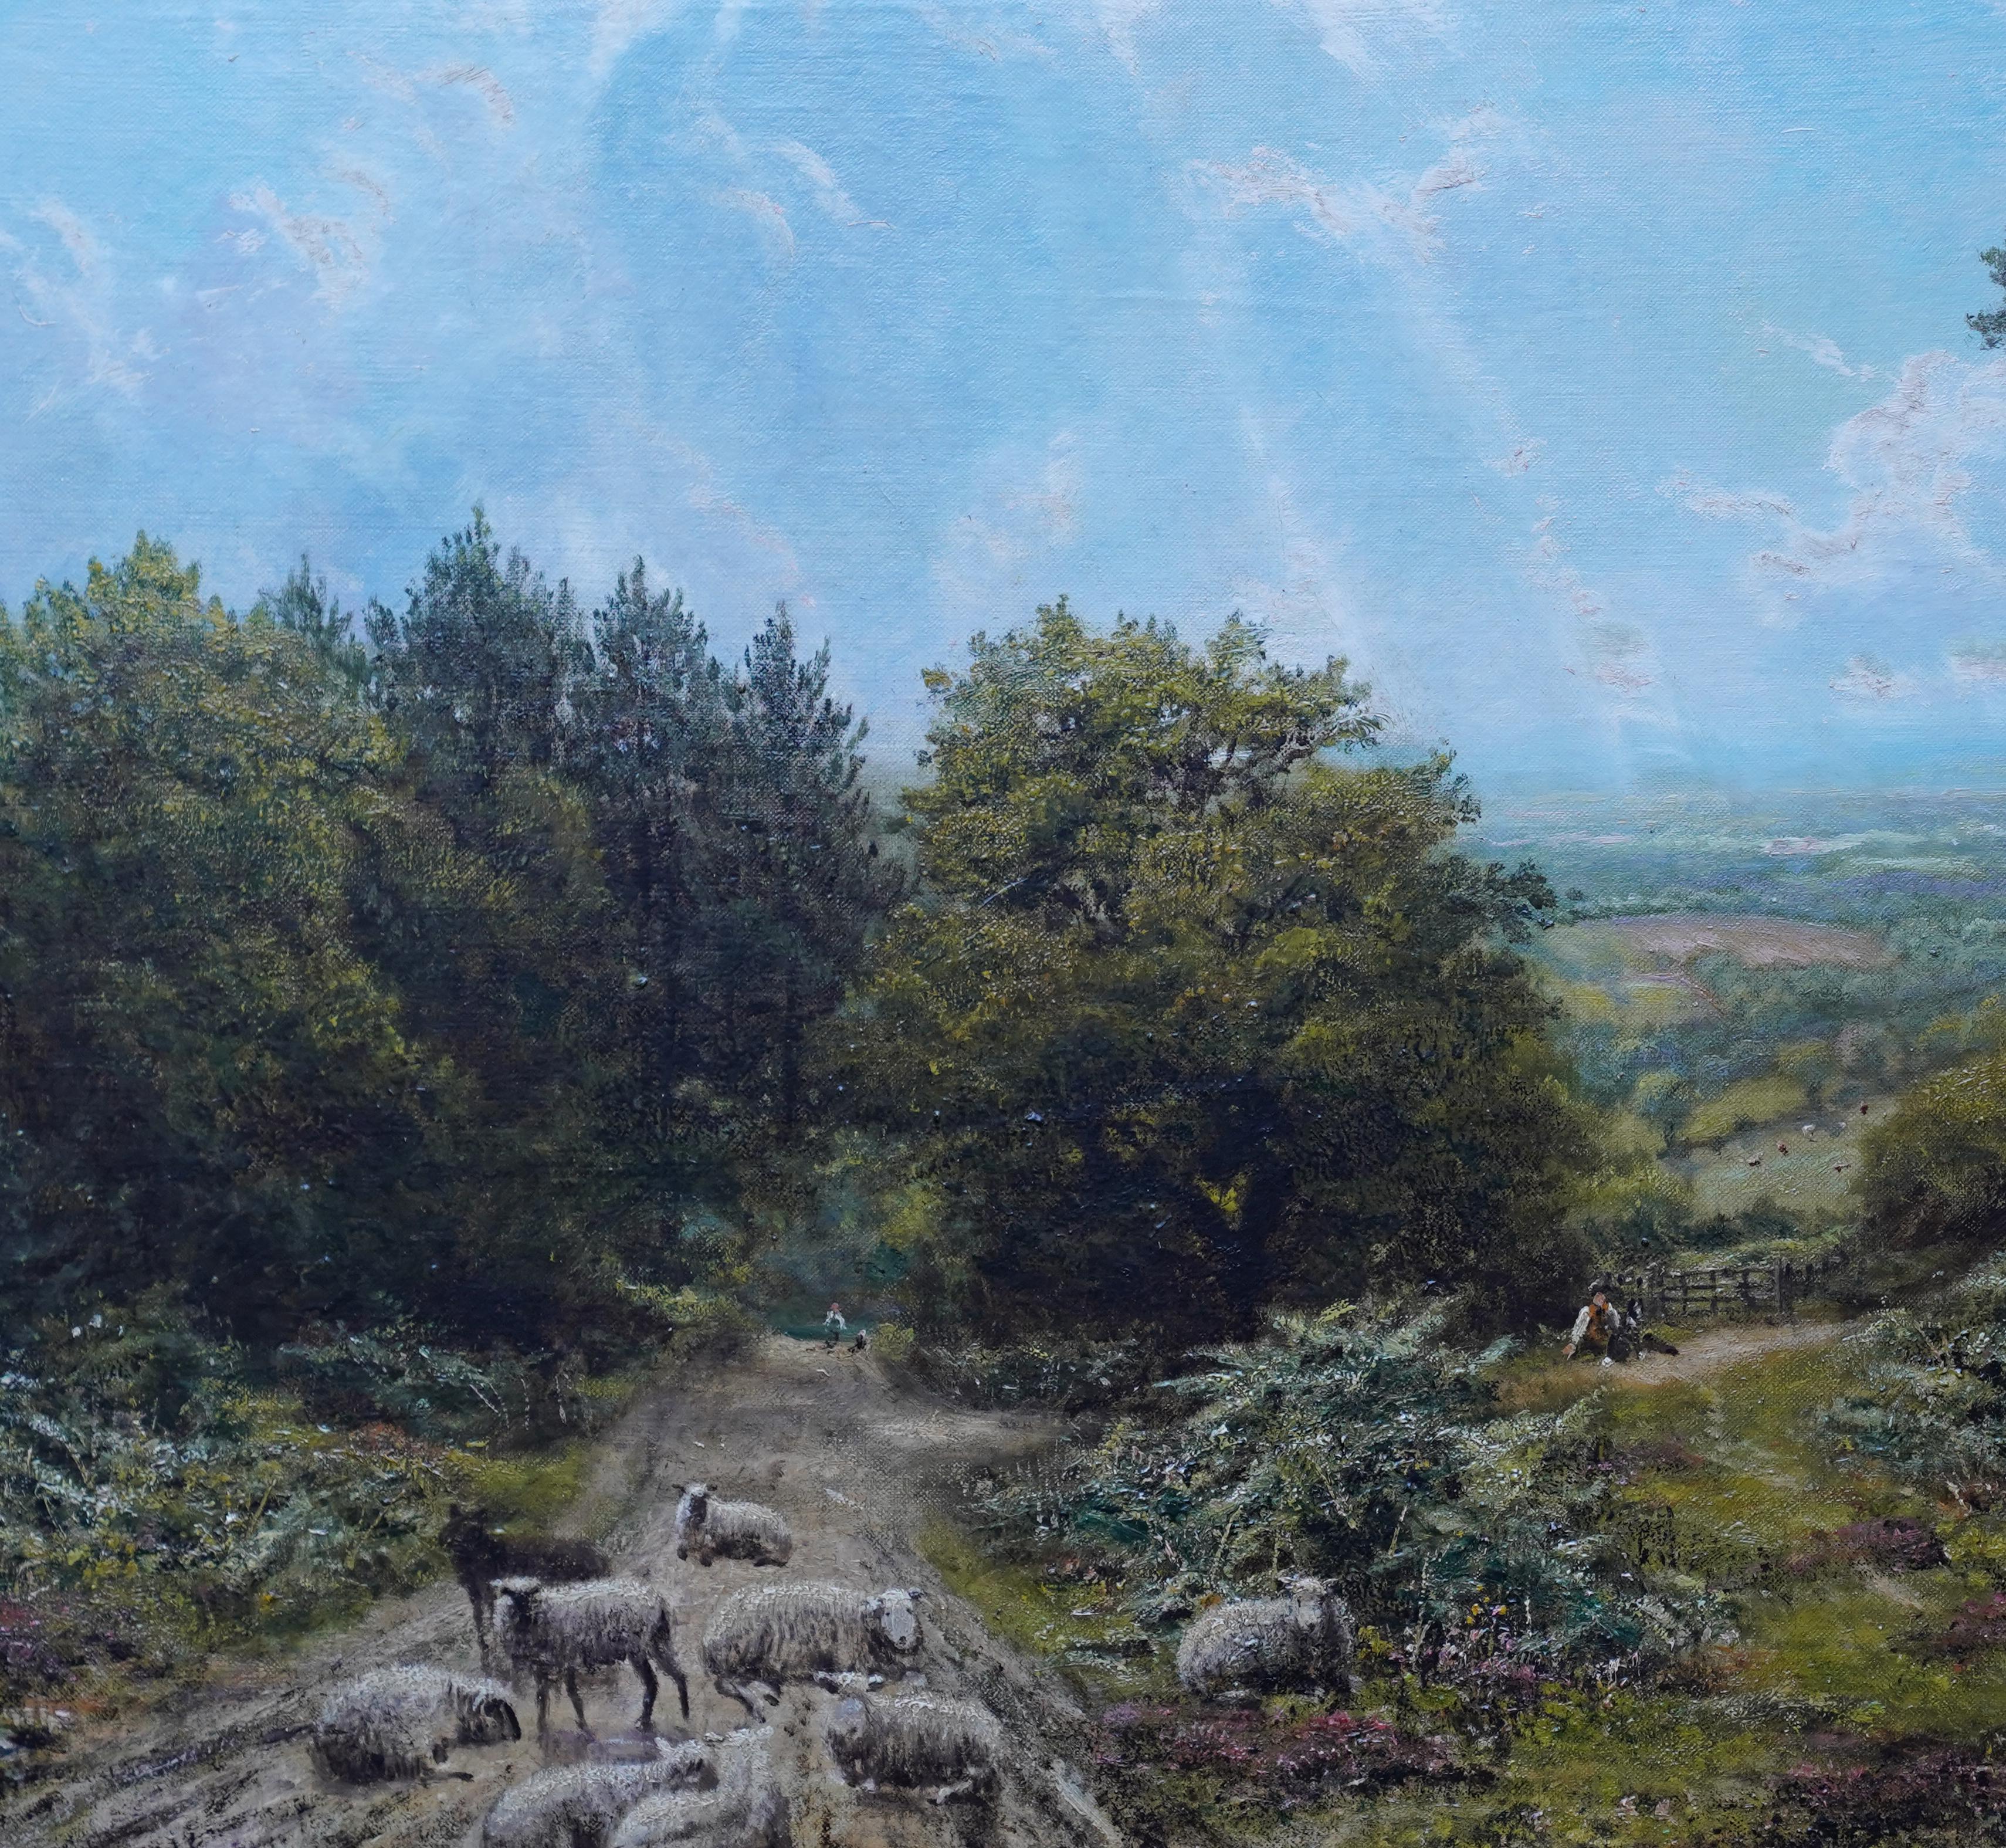 Diese schöne Surrey Landschaft Ölgemälde ist von bekannten britischen ausgestellten Künstler George William Mote. Die um 1870 gemalte Komposition ist eine Landschaft mit einem herrlichen Blick in die Ferne auf der rechten Seite. Im Vordergrund ruht